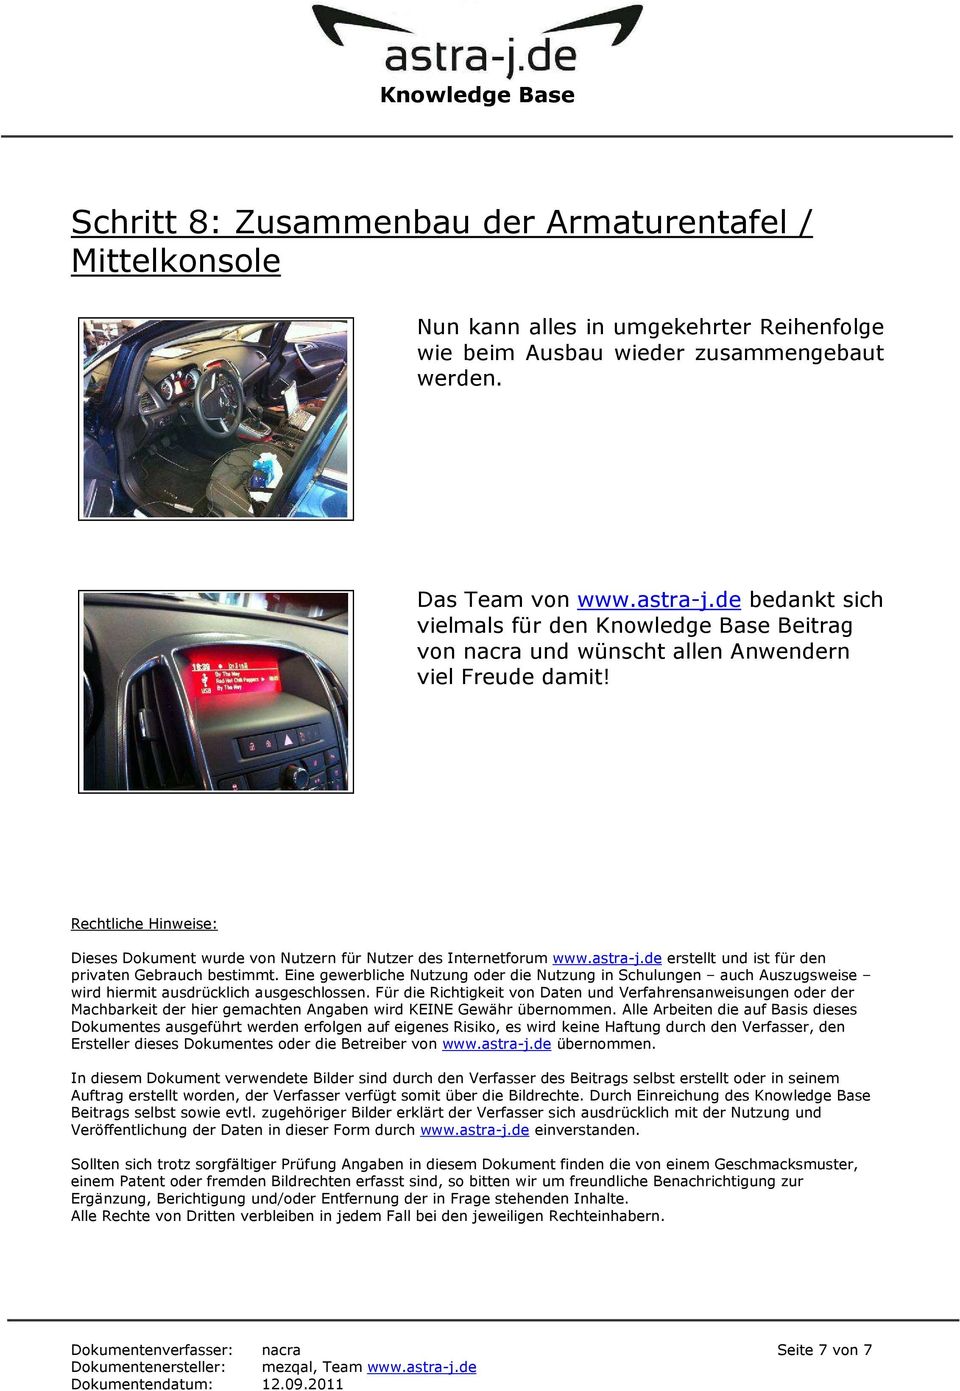 Rechtliche Hinweise: Dieses Dokument wurde von Nutzern für Nutzer des Internetforum www.astra-j.de erstellt und ist für den privaten Gebrauch bestimmt.